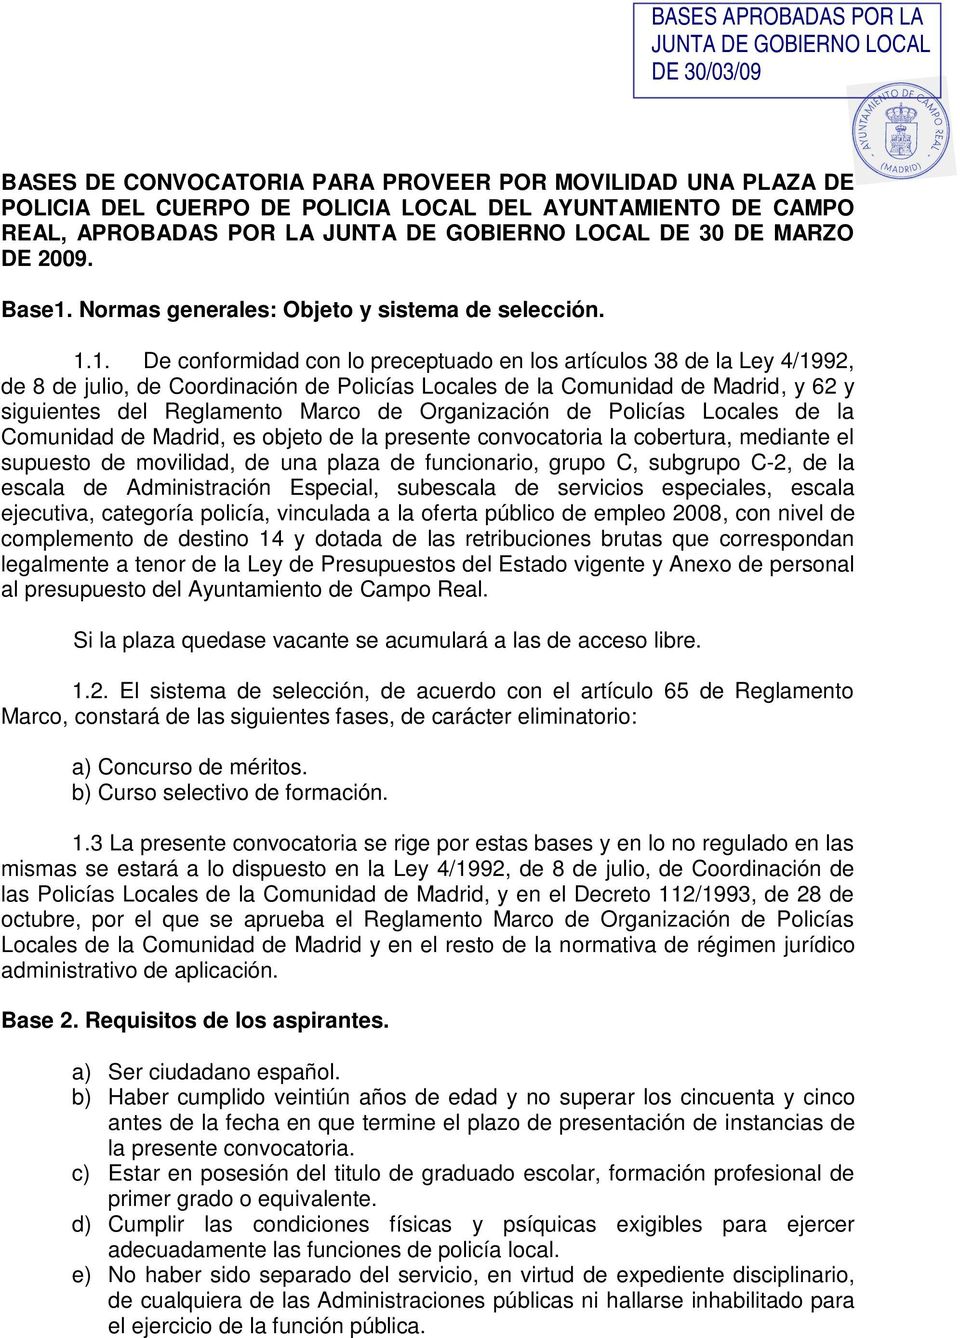 1. De conformidad con lo preceptuado en los artículos 38 de la Ley 4/1992, de 8 de julio, de Coordinación de Policías Locales de la Comunidad de Madrid, y 62 y siguientes del Reglamento Marco de